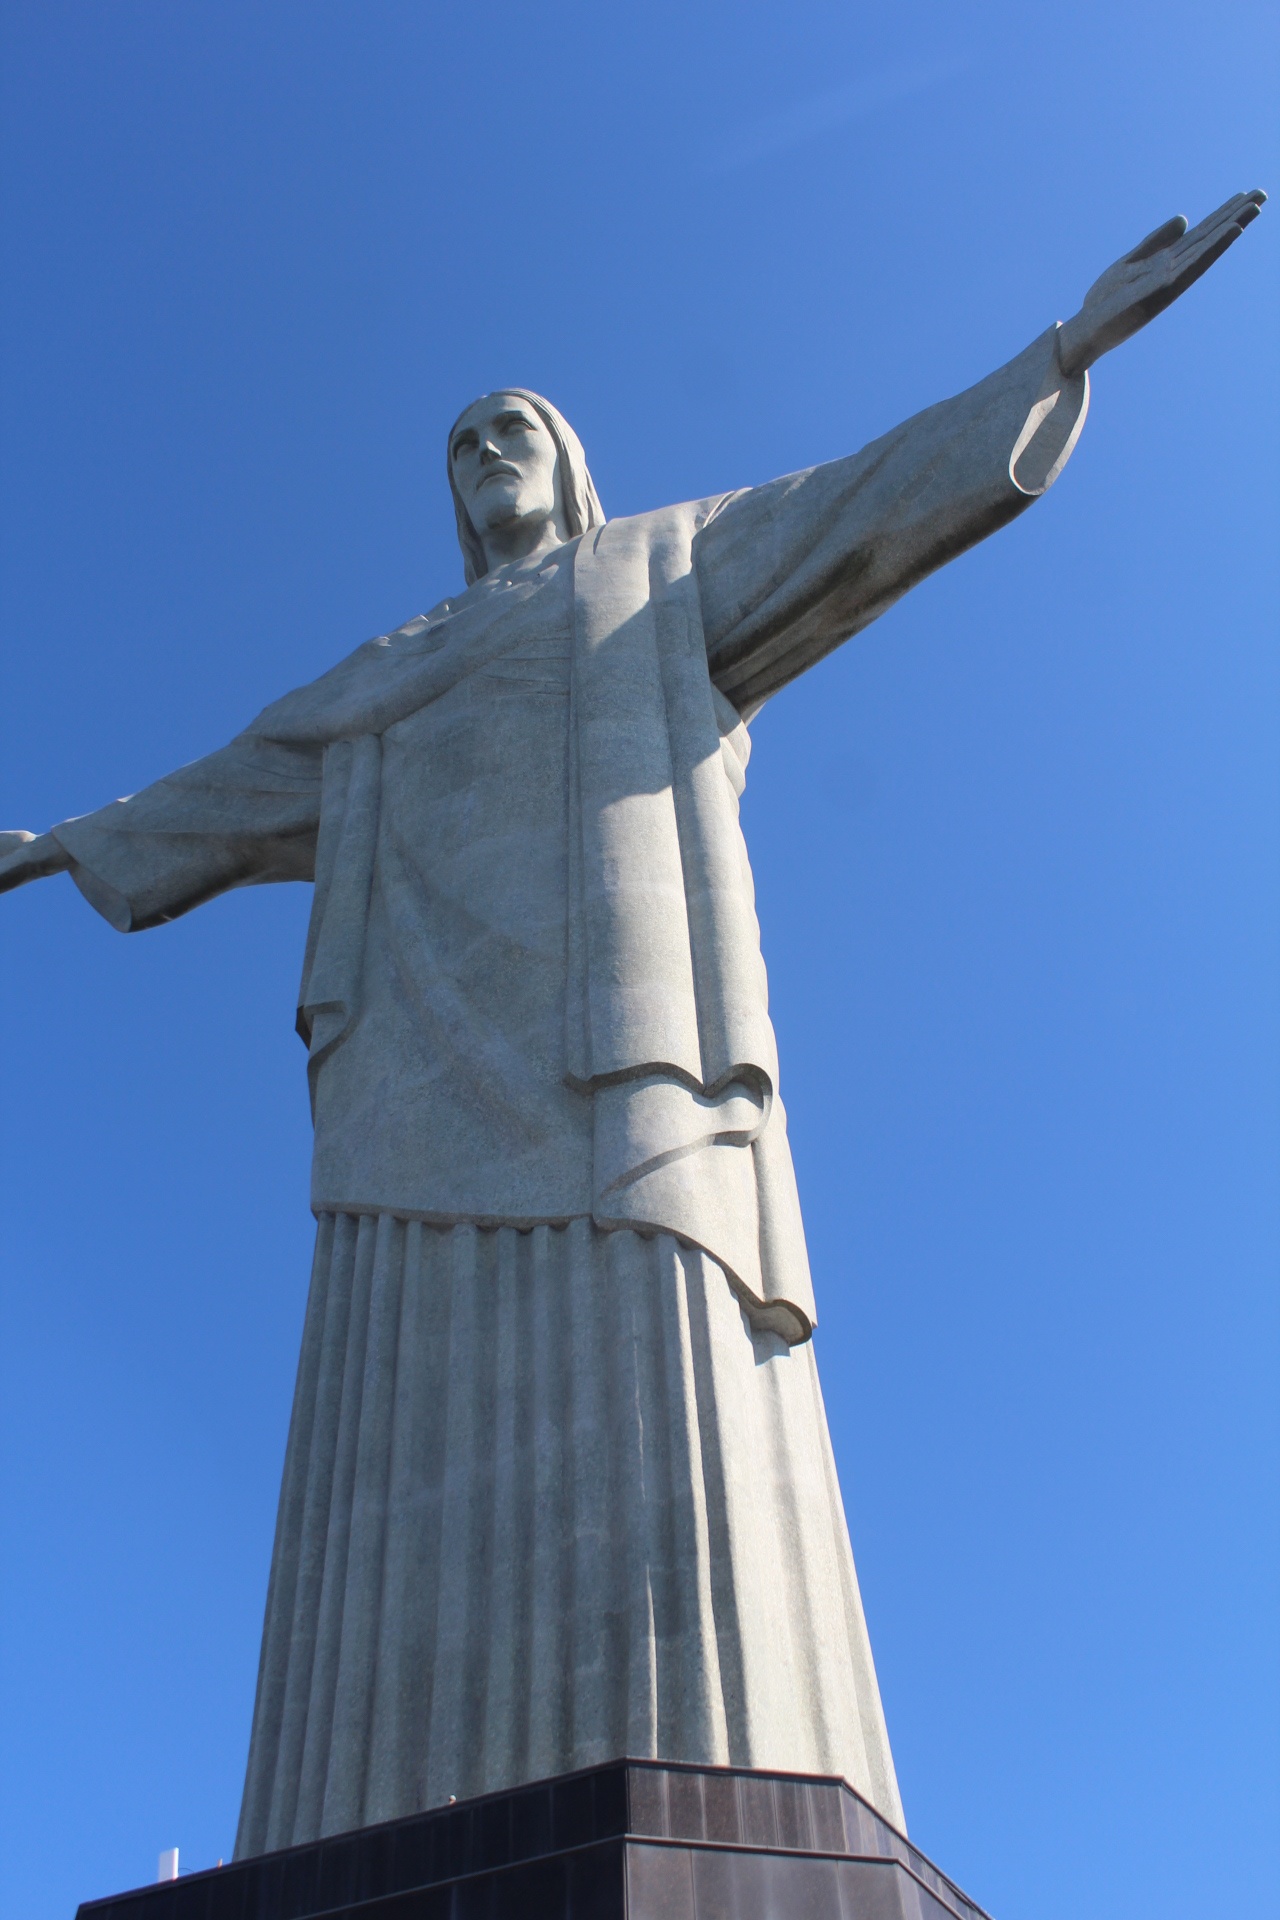 リオデジャネイロの奇跡 コルコバードの丘のキリスト像はなぜあの場所にあるのか 桑原淳 Junkuwabara 世界一周1000人カットの旅人美容師 超超エリート株式会社代表